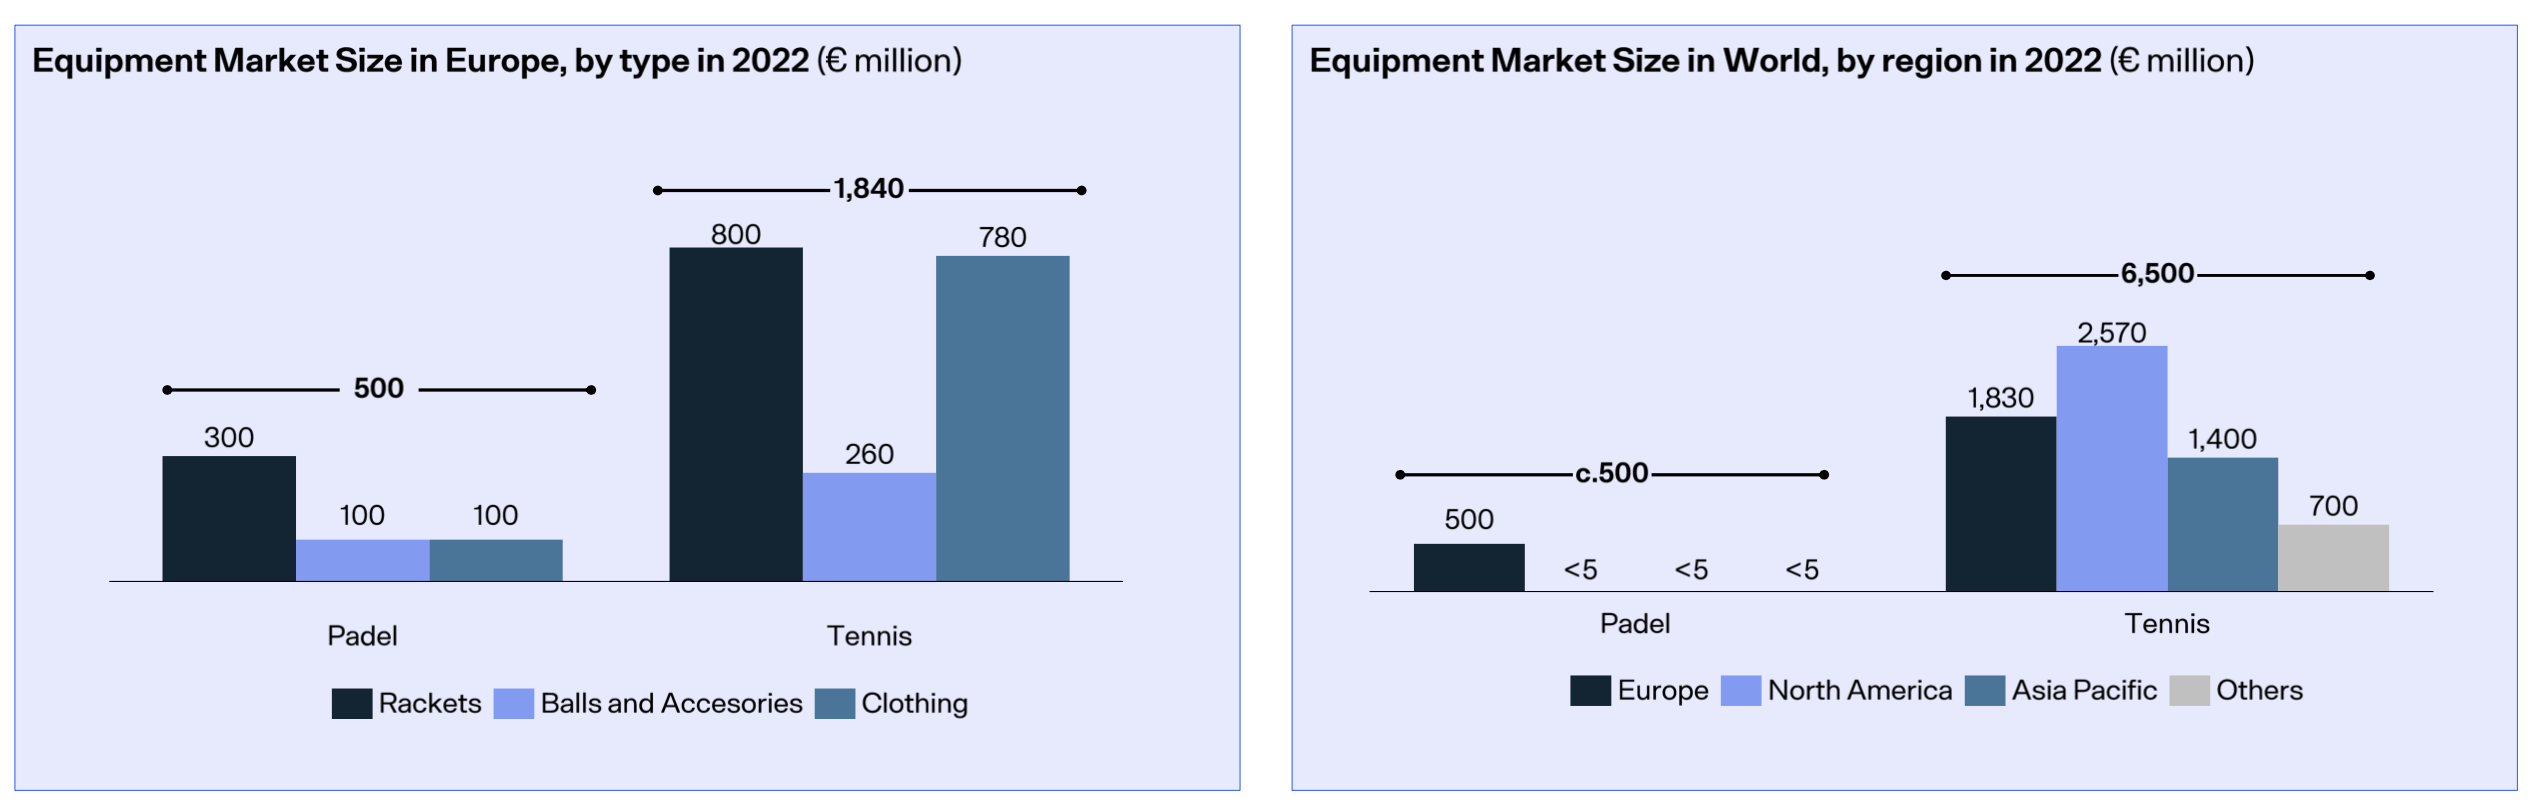 Comparação de mercado de equipamentos padel/tênis